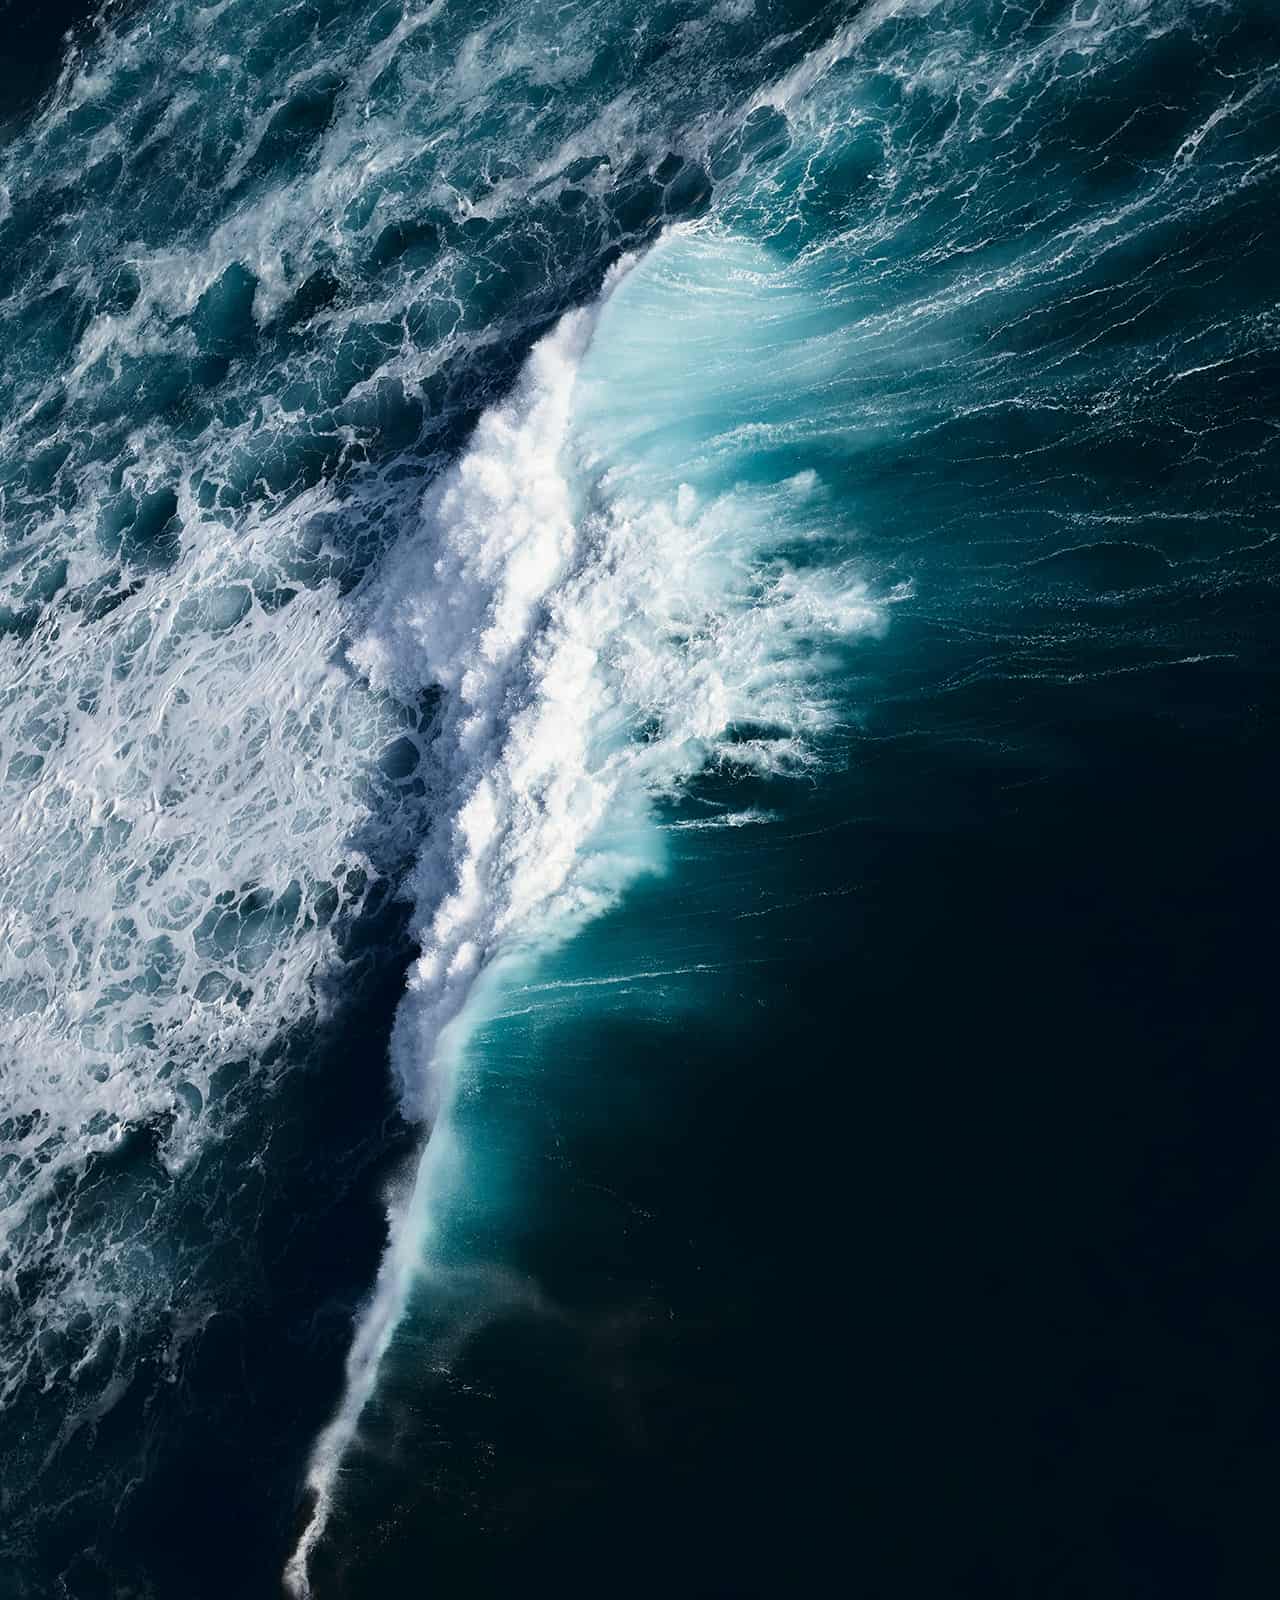 Riesenwelle im indischen Ozean welche gerade bricht.